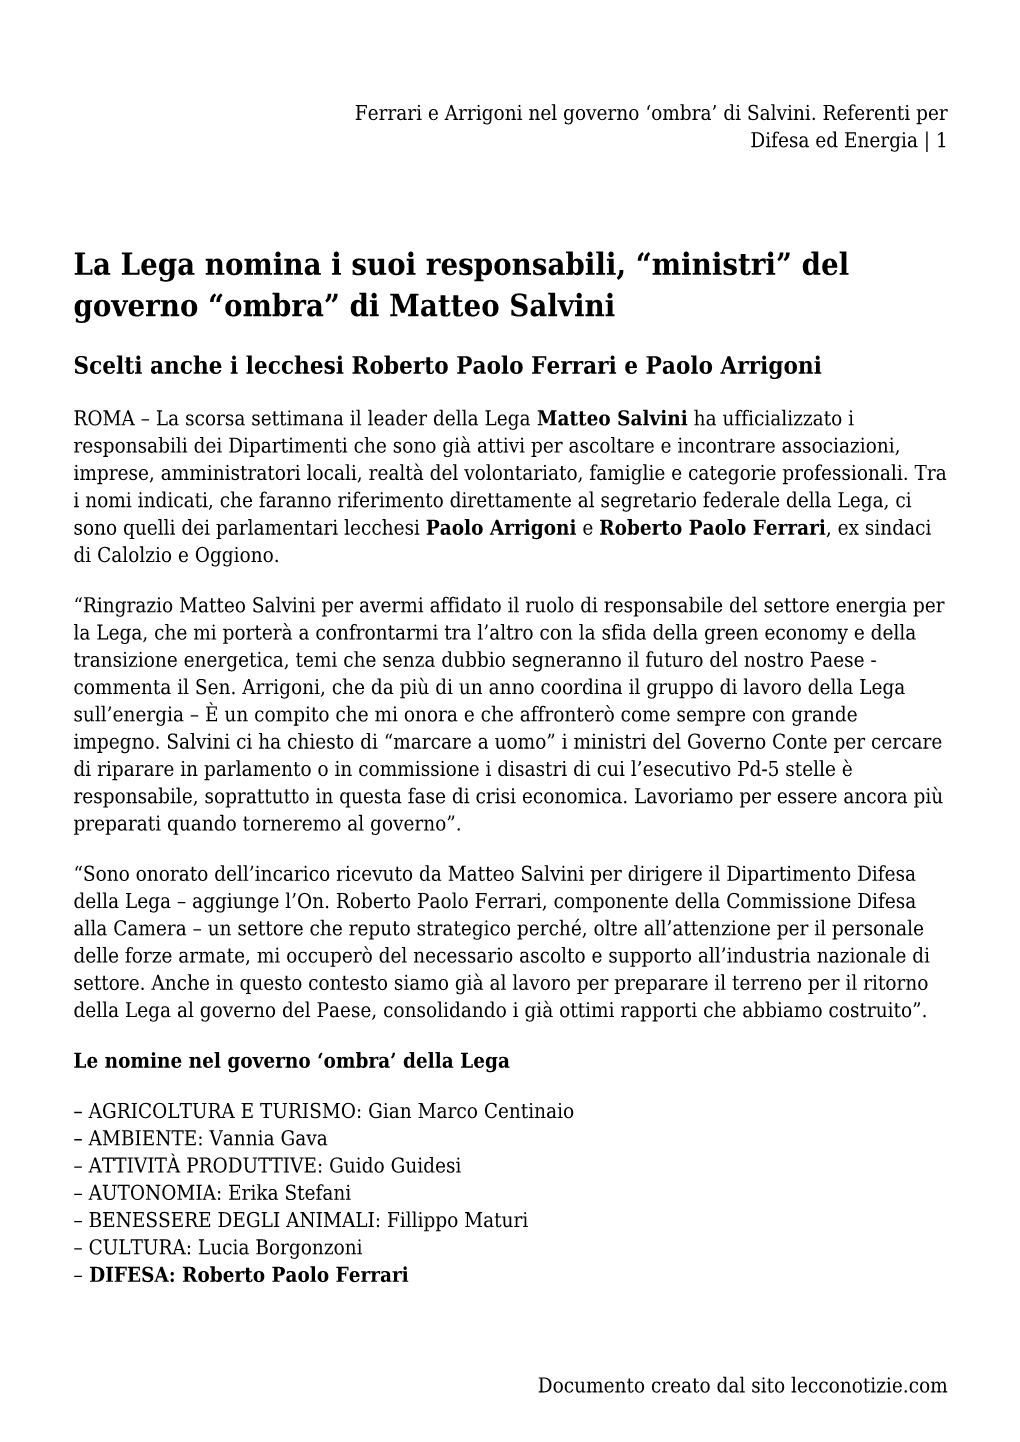 Ferrari E Arrigoni Nel Governo &#8216;Ombra&#8217; Di Salvini. Referenti Per Difesa Ed Energia